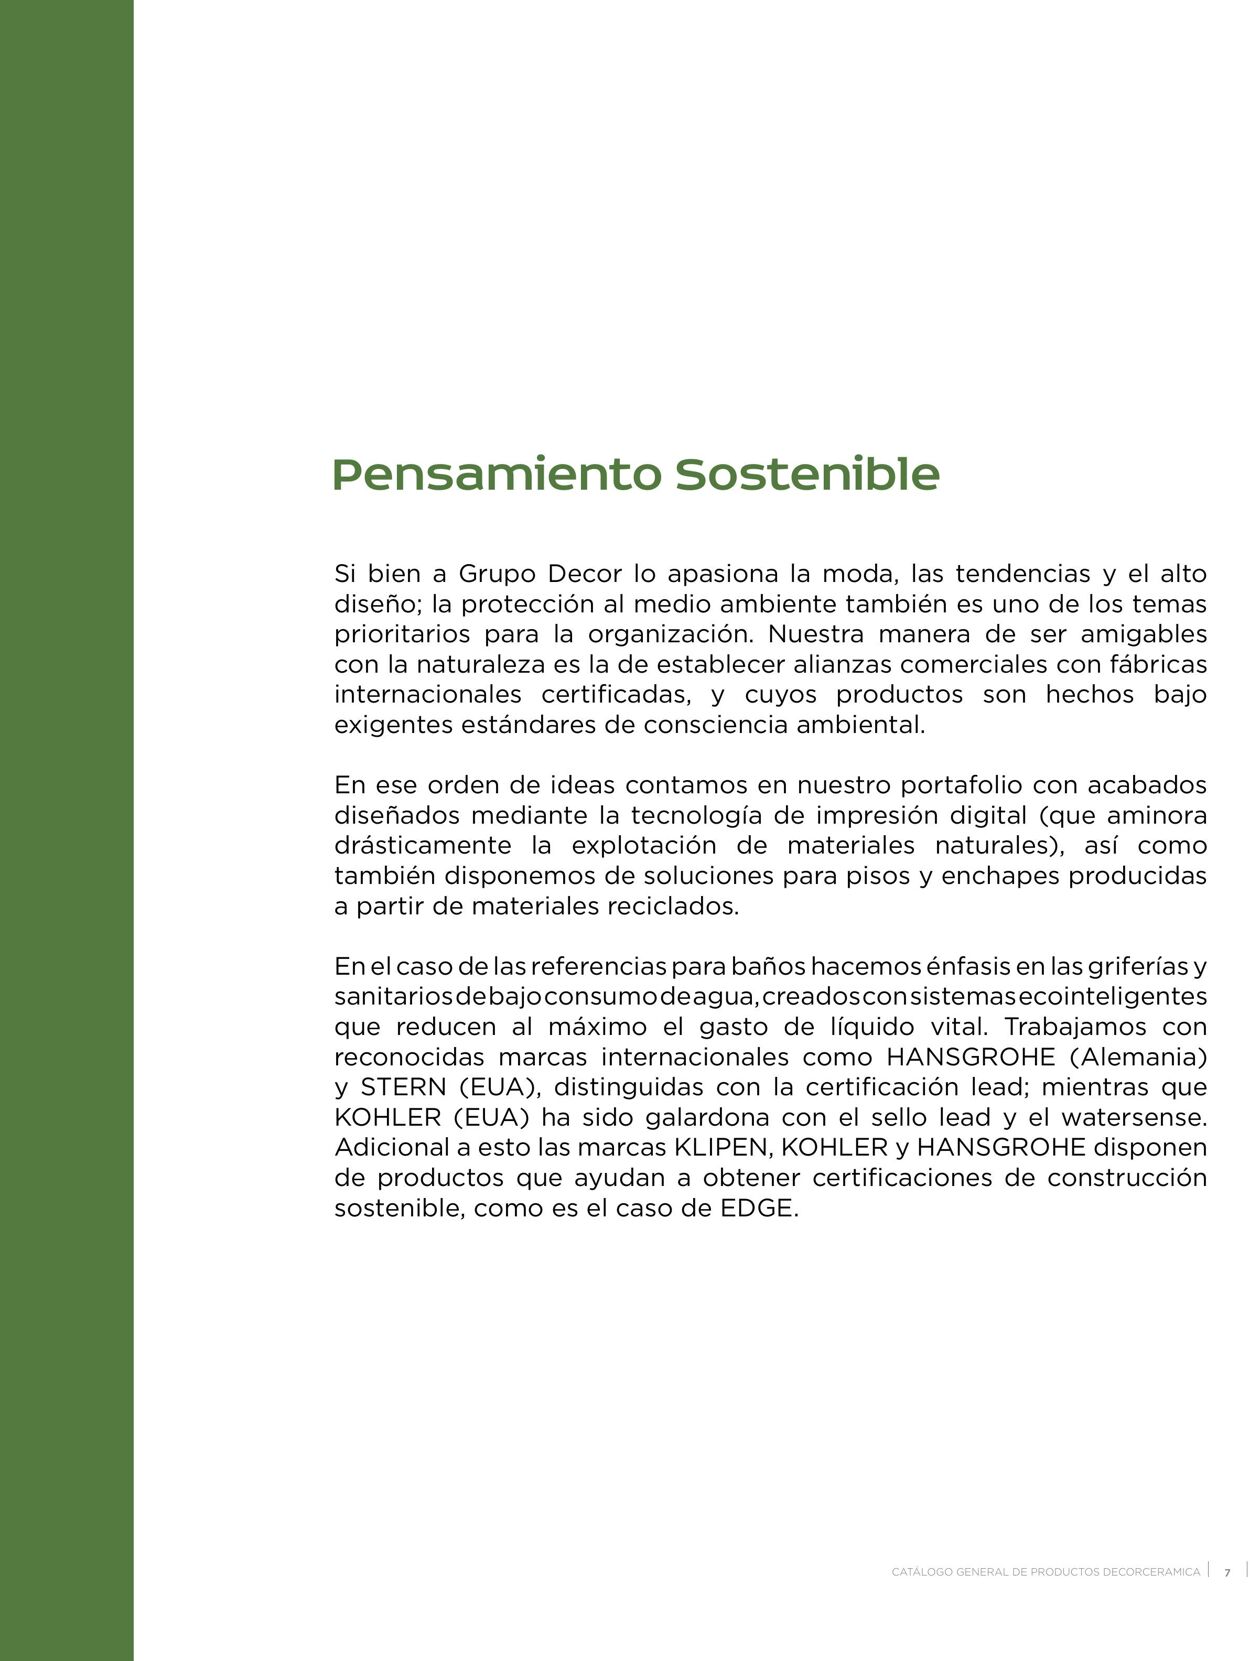 Catálogo Decorcerámica 01.08.2022 - 31.12.2022